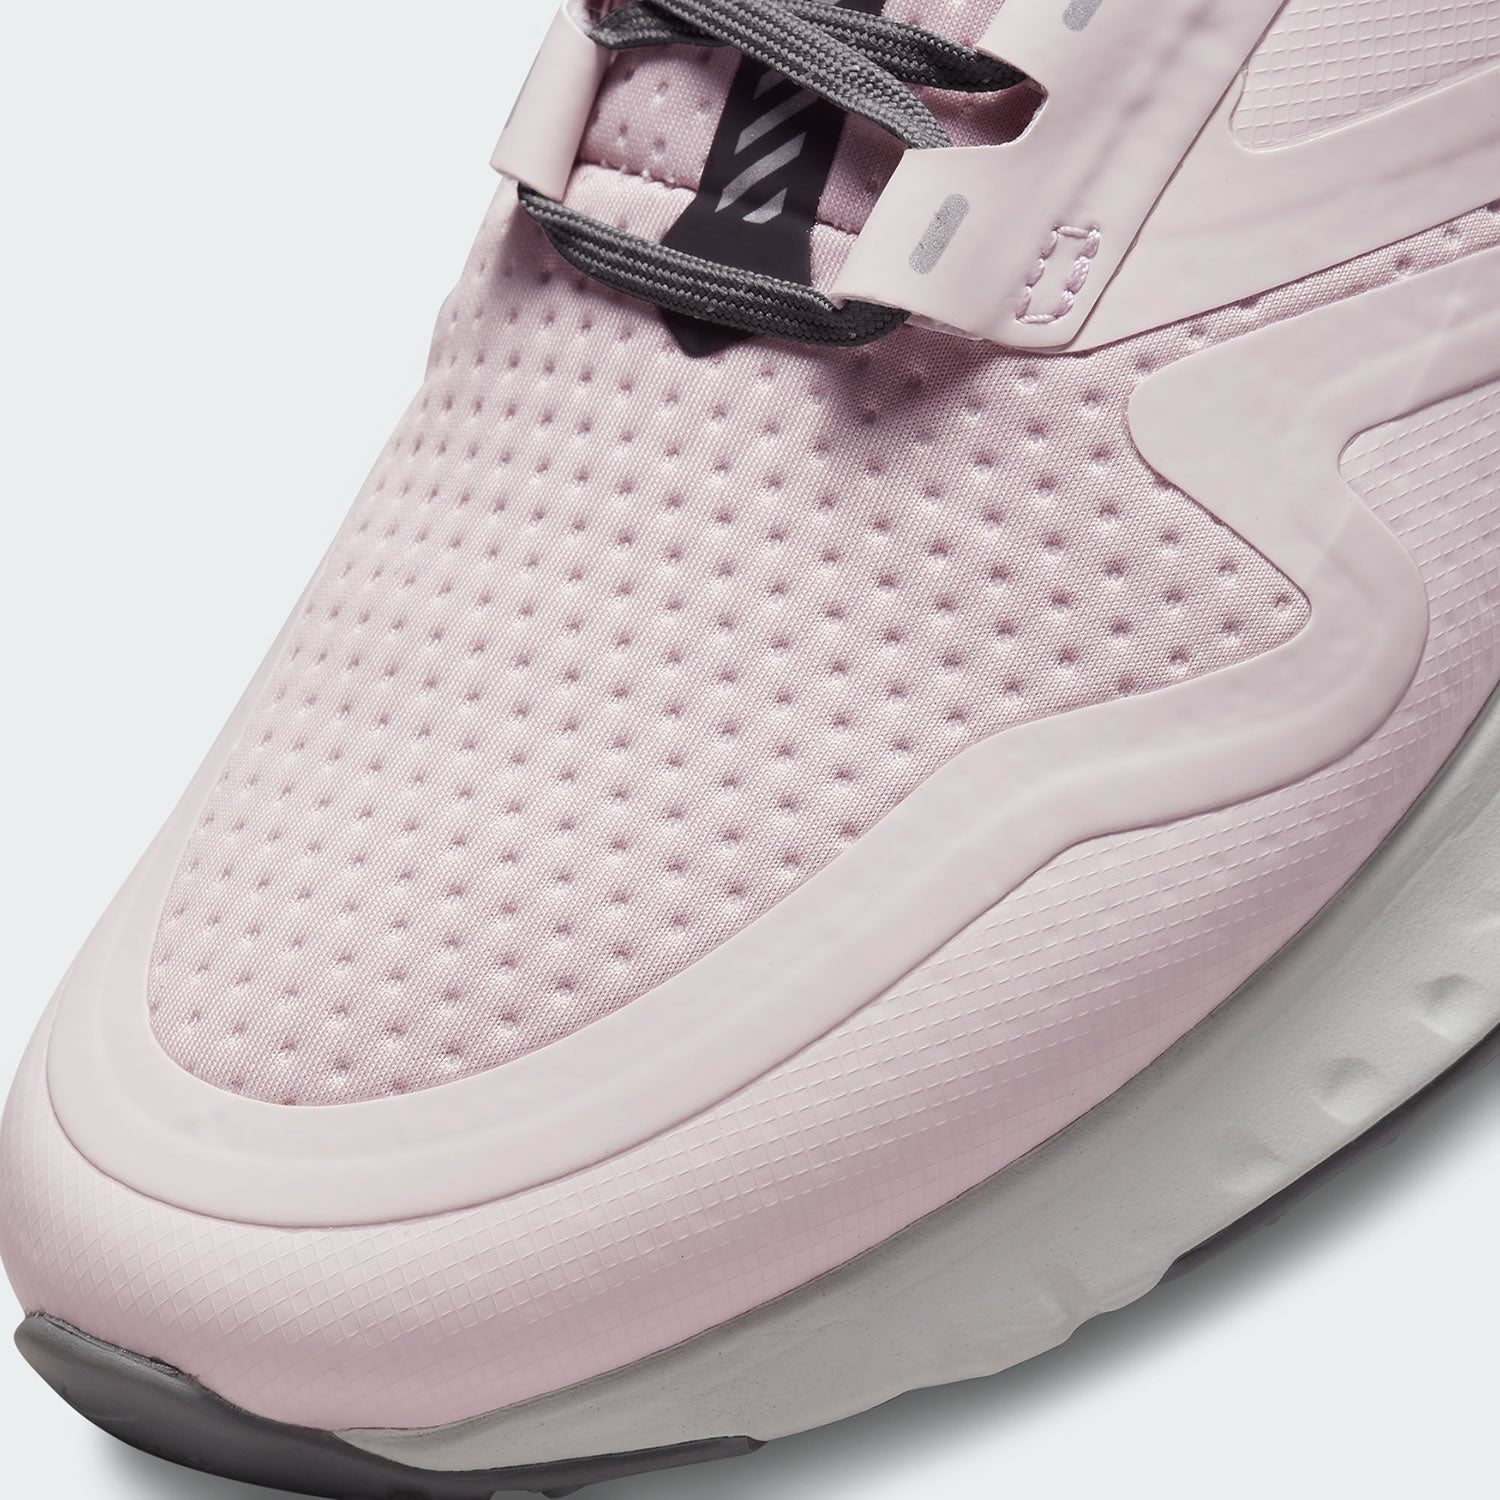 tradesports.co.uk Nike Odyssey React 2 Shield Women's Shoes BQ1672 601